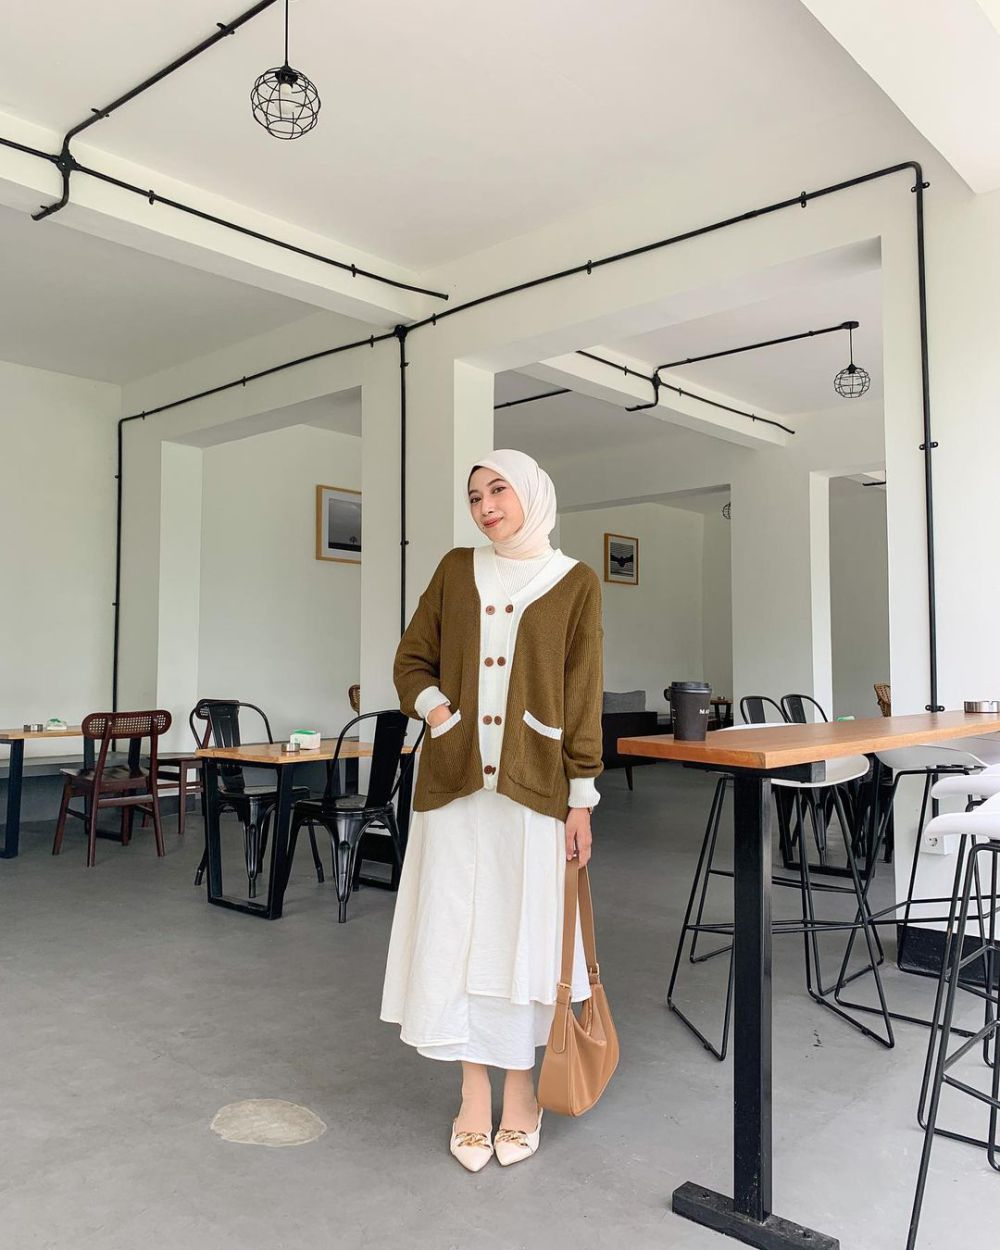 8 OOTD Hijab Korean Style ala Rafika Rahma, Looks Pretty!